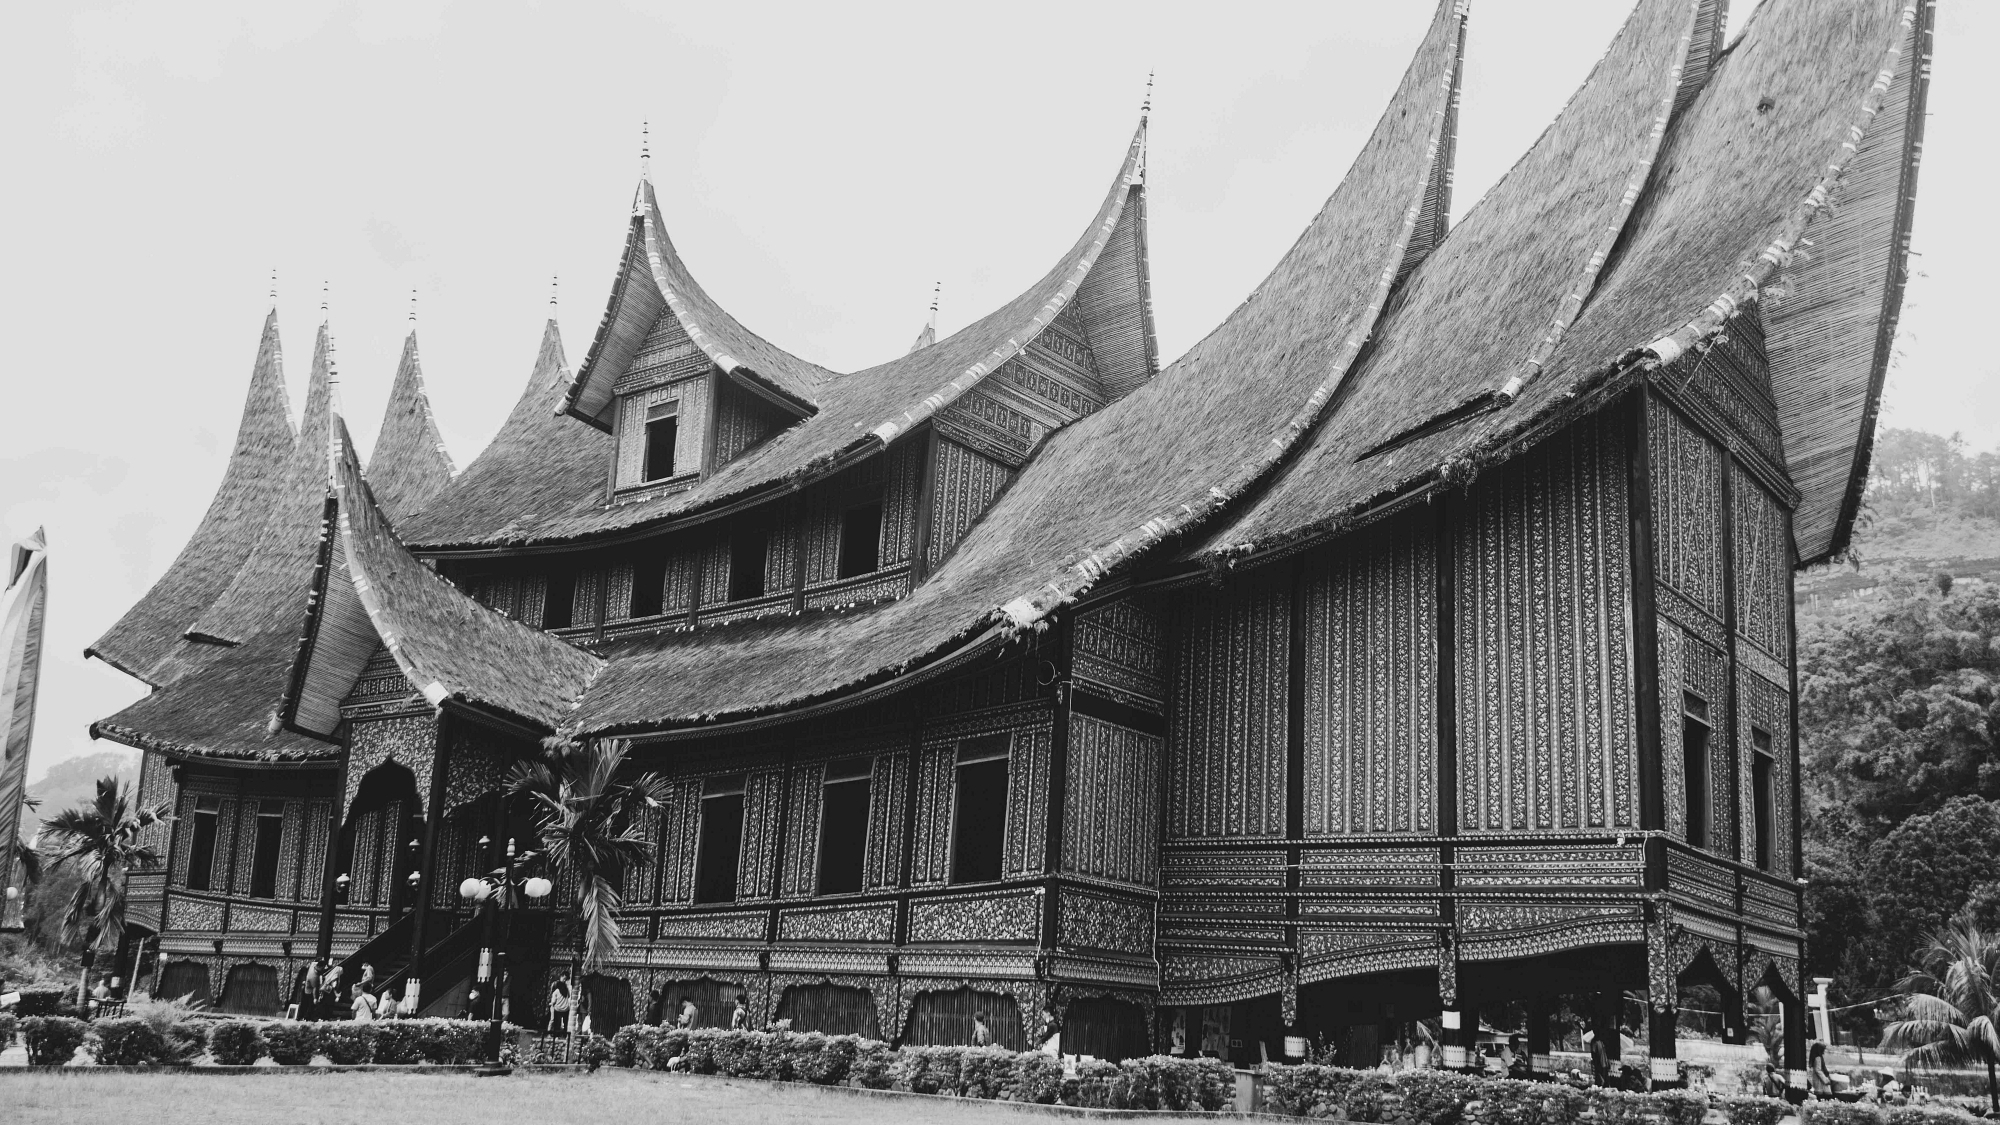 West Sumatra Cultural Tour by David Metcalf